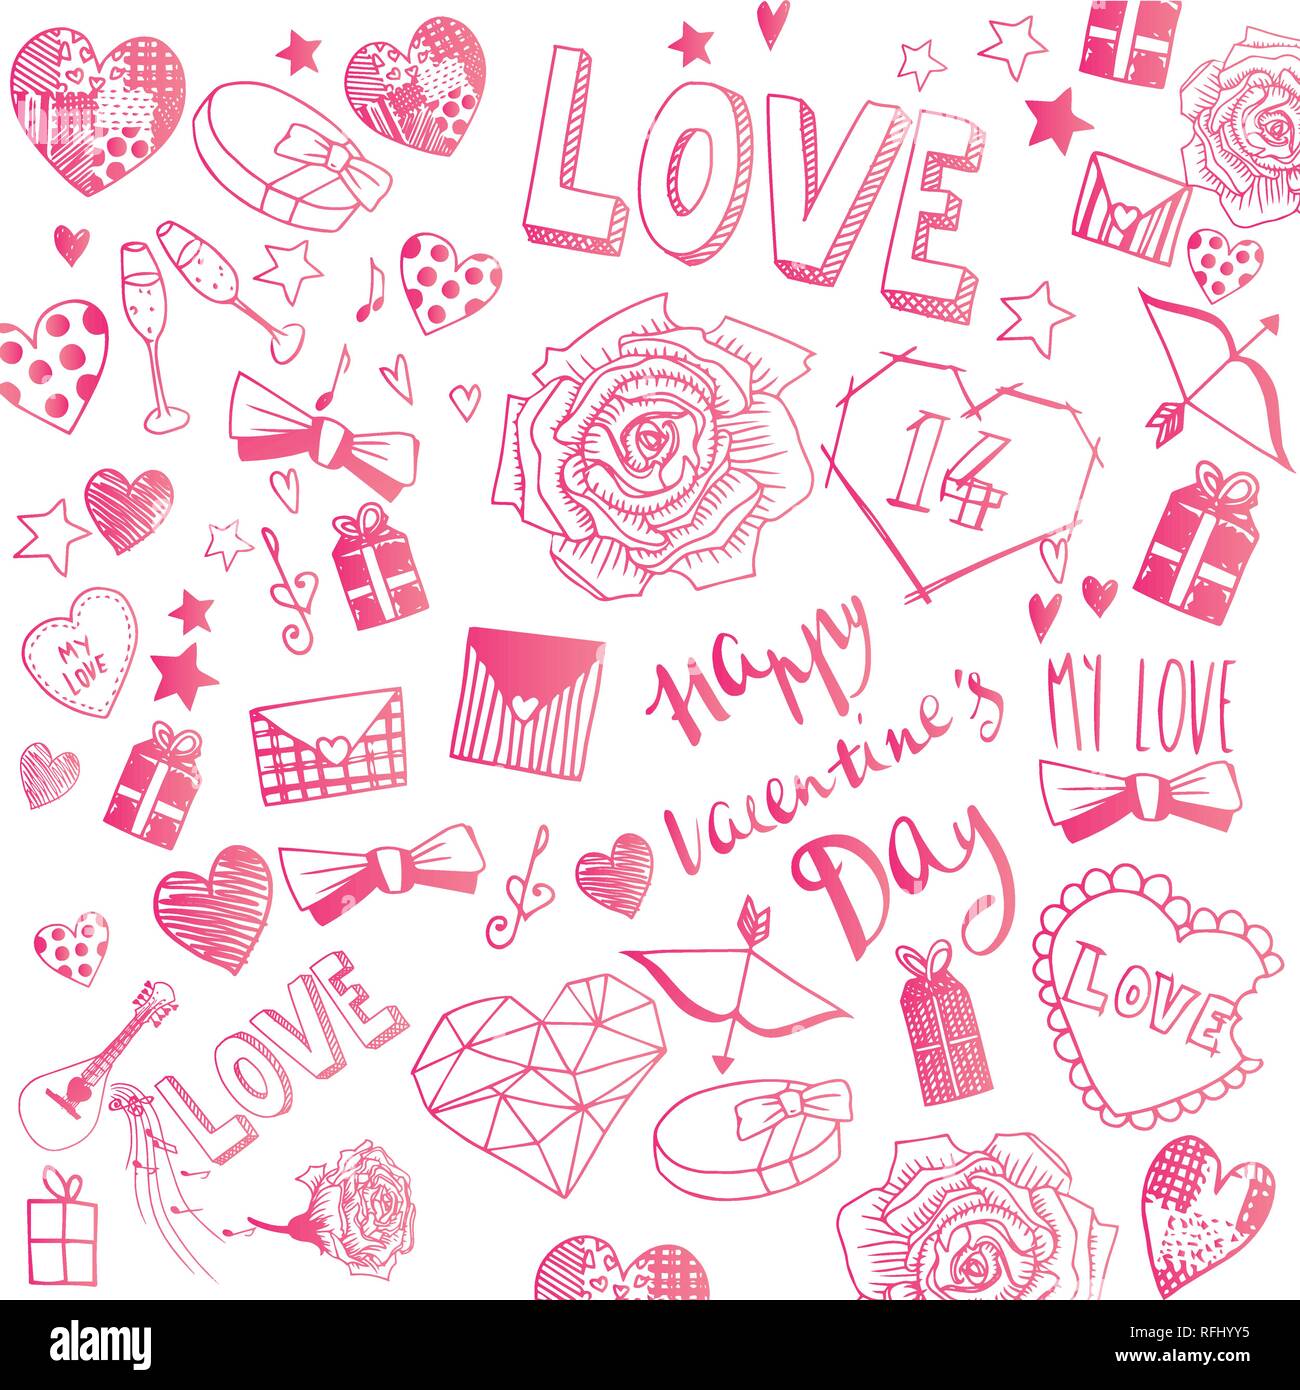 Il giorno di San Valentino scarabocchi illustrazioni vettoriali completa banner Illustrazione Vettoriale